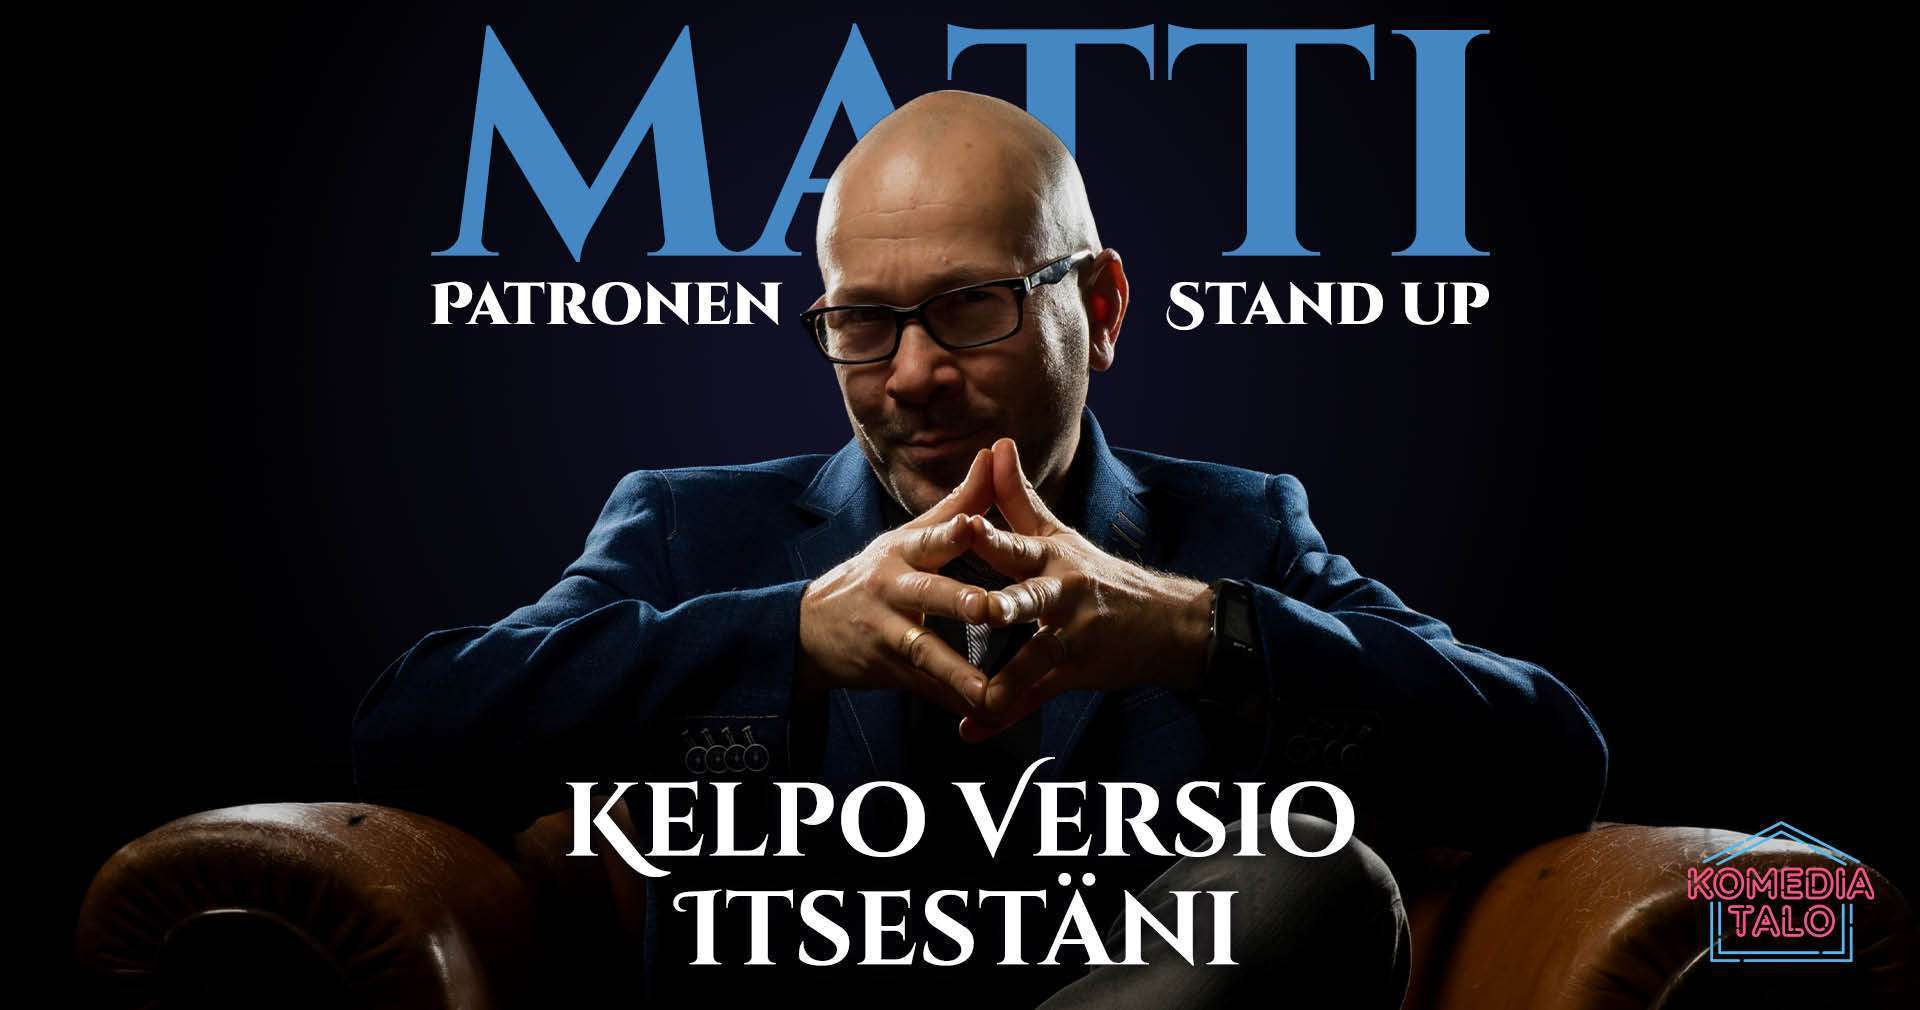 Ryskypäivän stand up show: Matti Patronen - Kelpo versio itsestäni